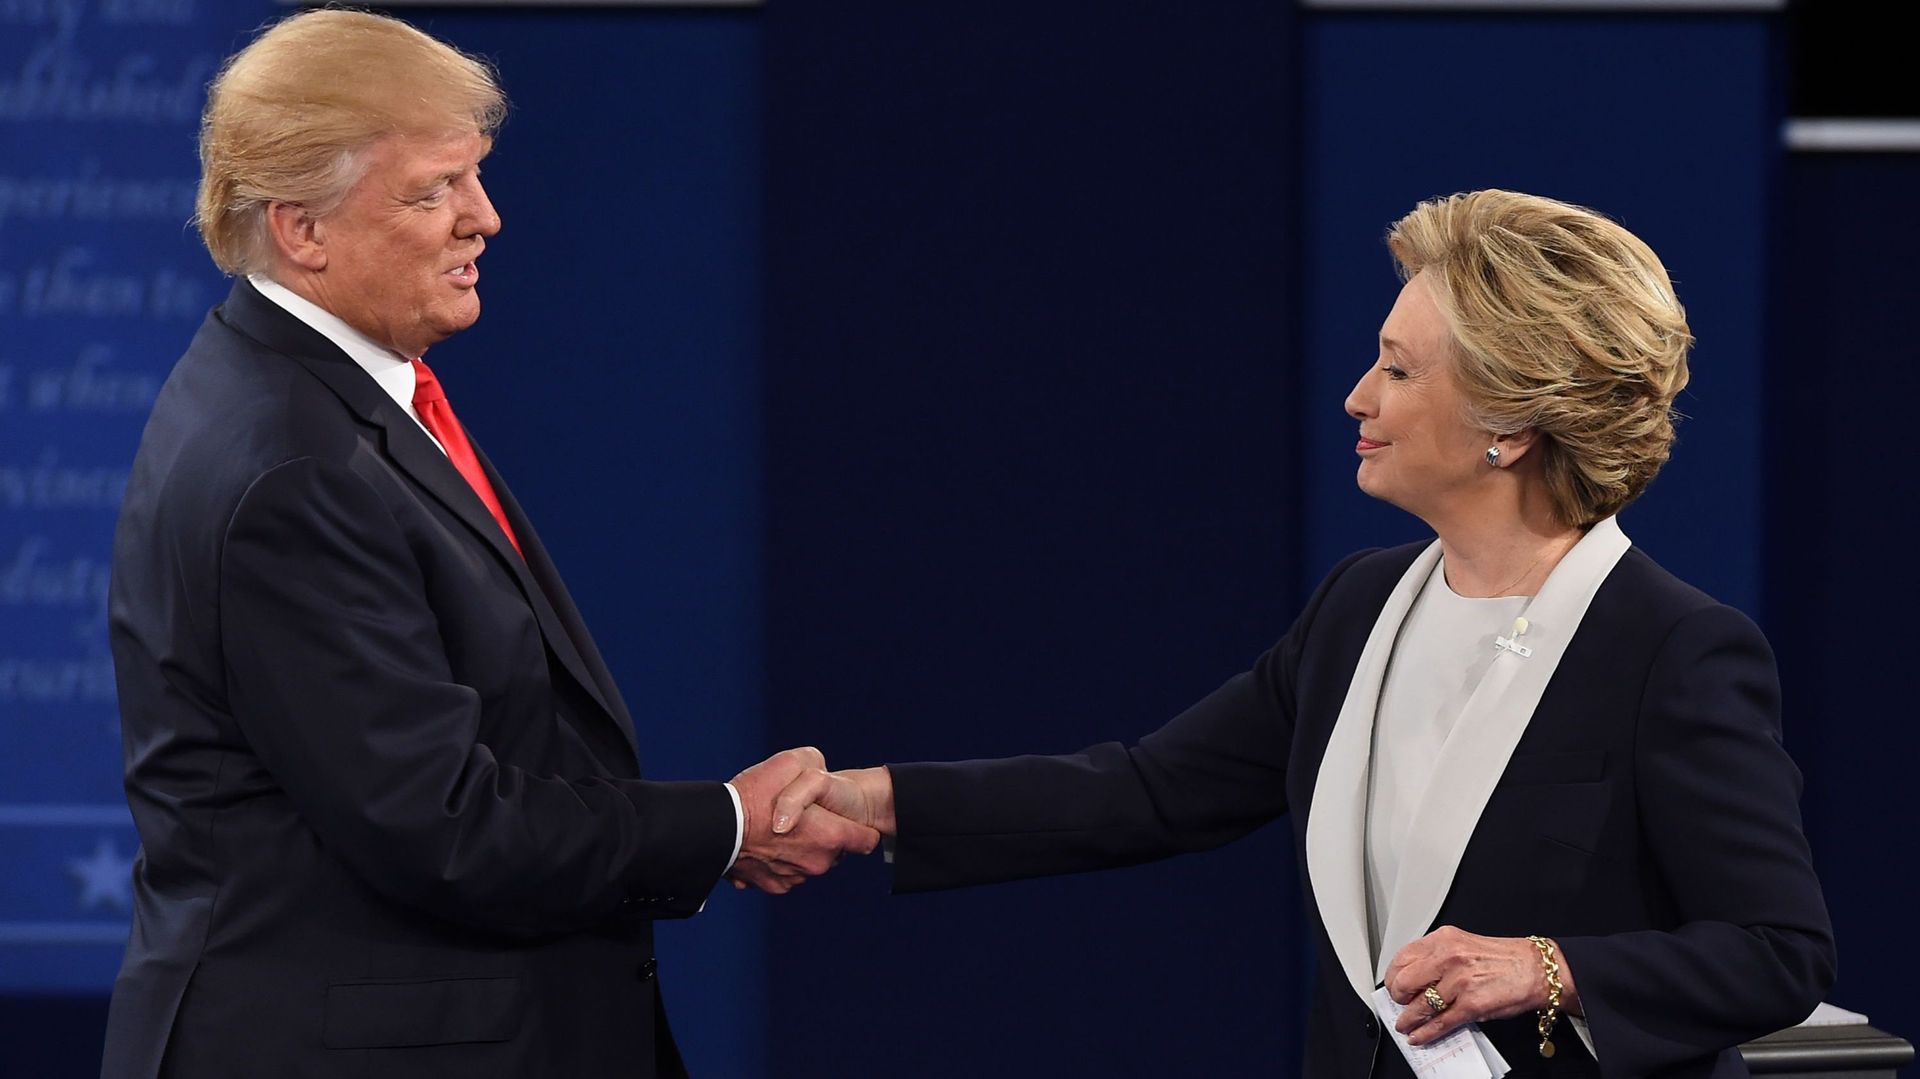 Débat Trump/Clinton: un final respectueux après des échanges houleux entre les rivaux